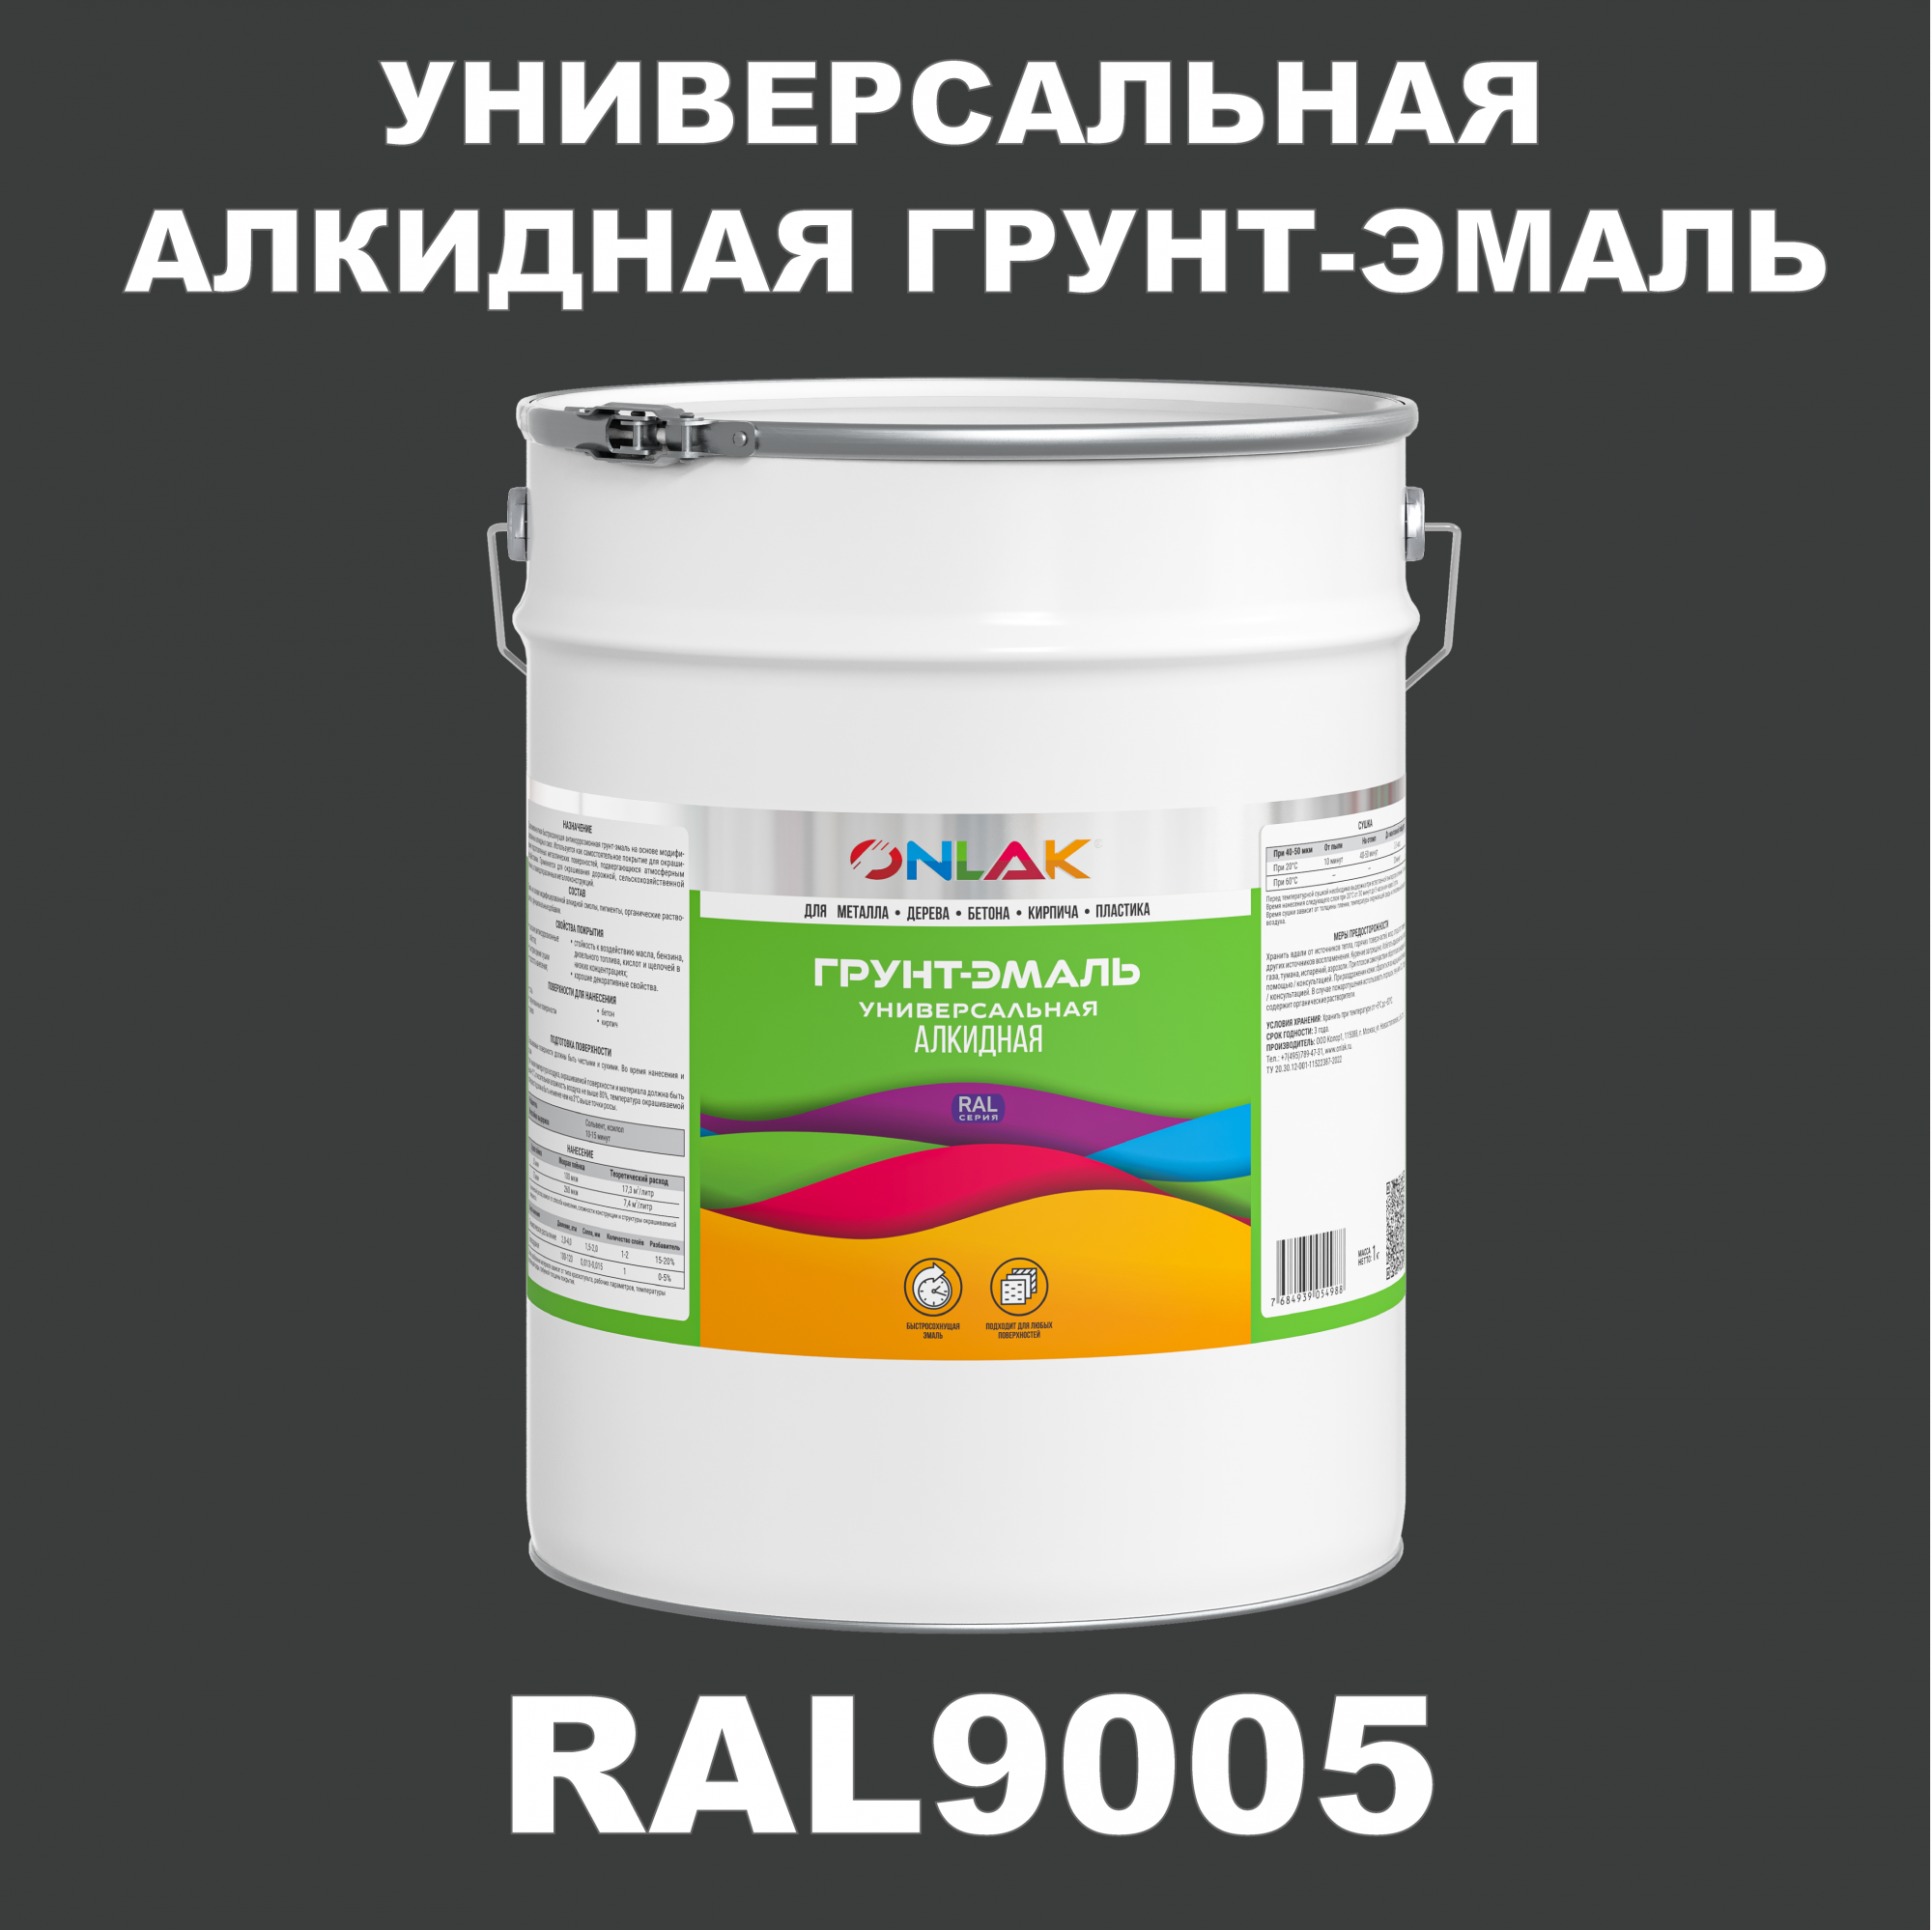 Грунт-эмаль ONLAK 1К RAL9005 антикоррозионная алкидная по металлу по ржавчине 20 кг